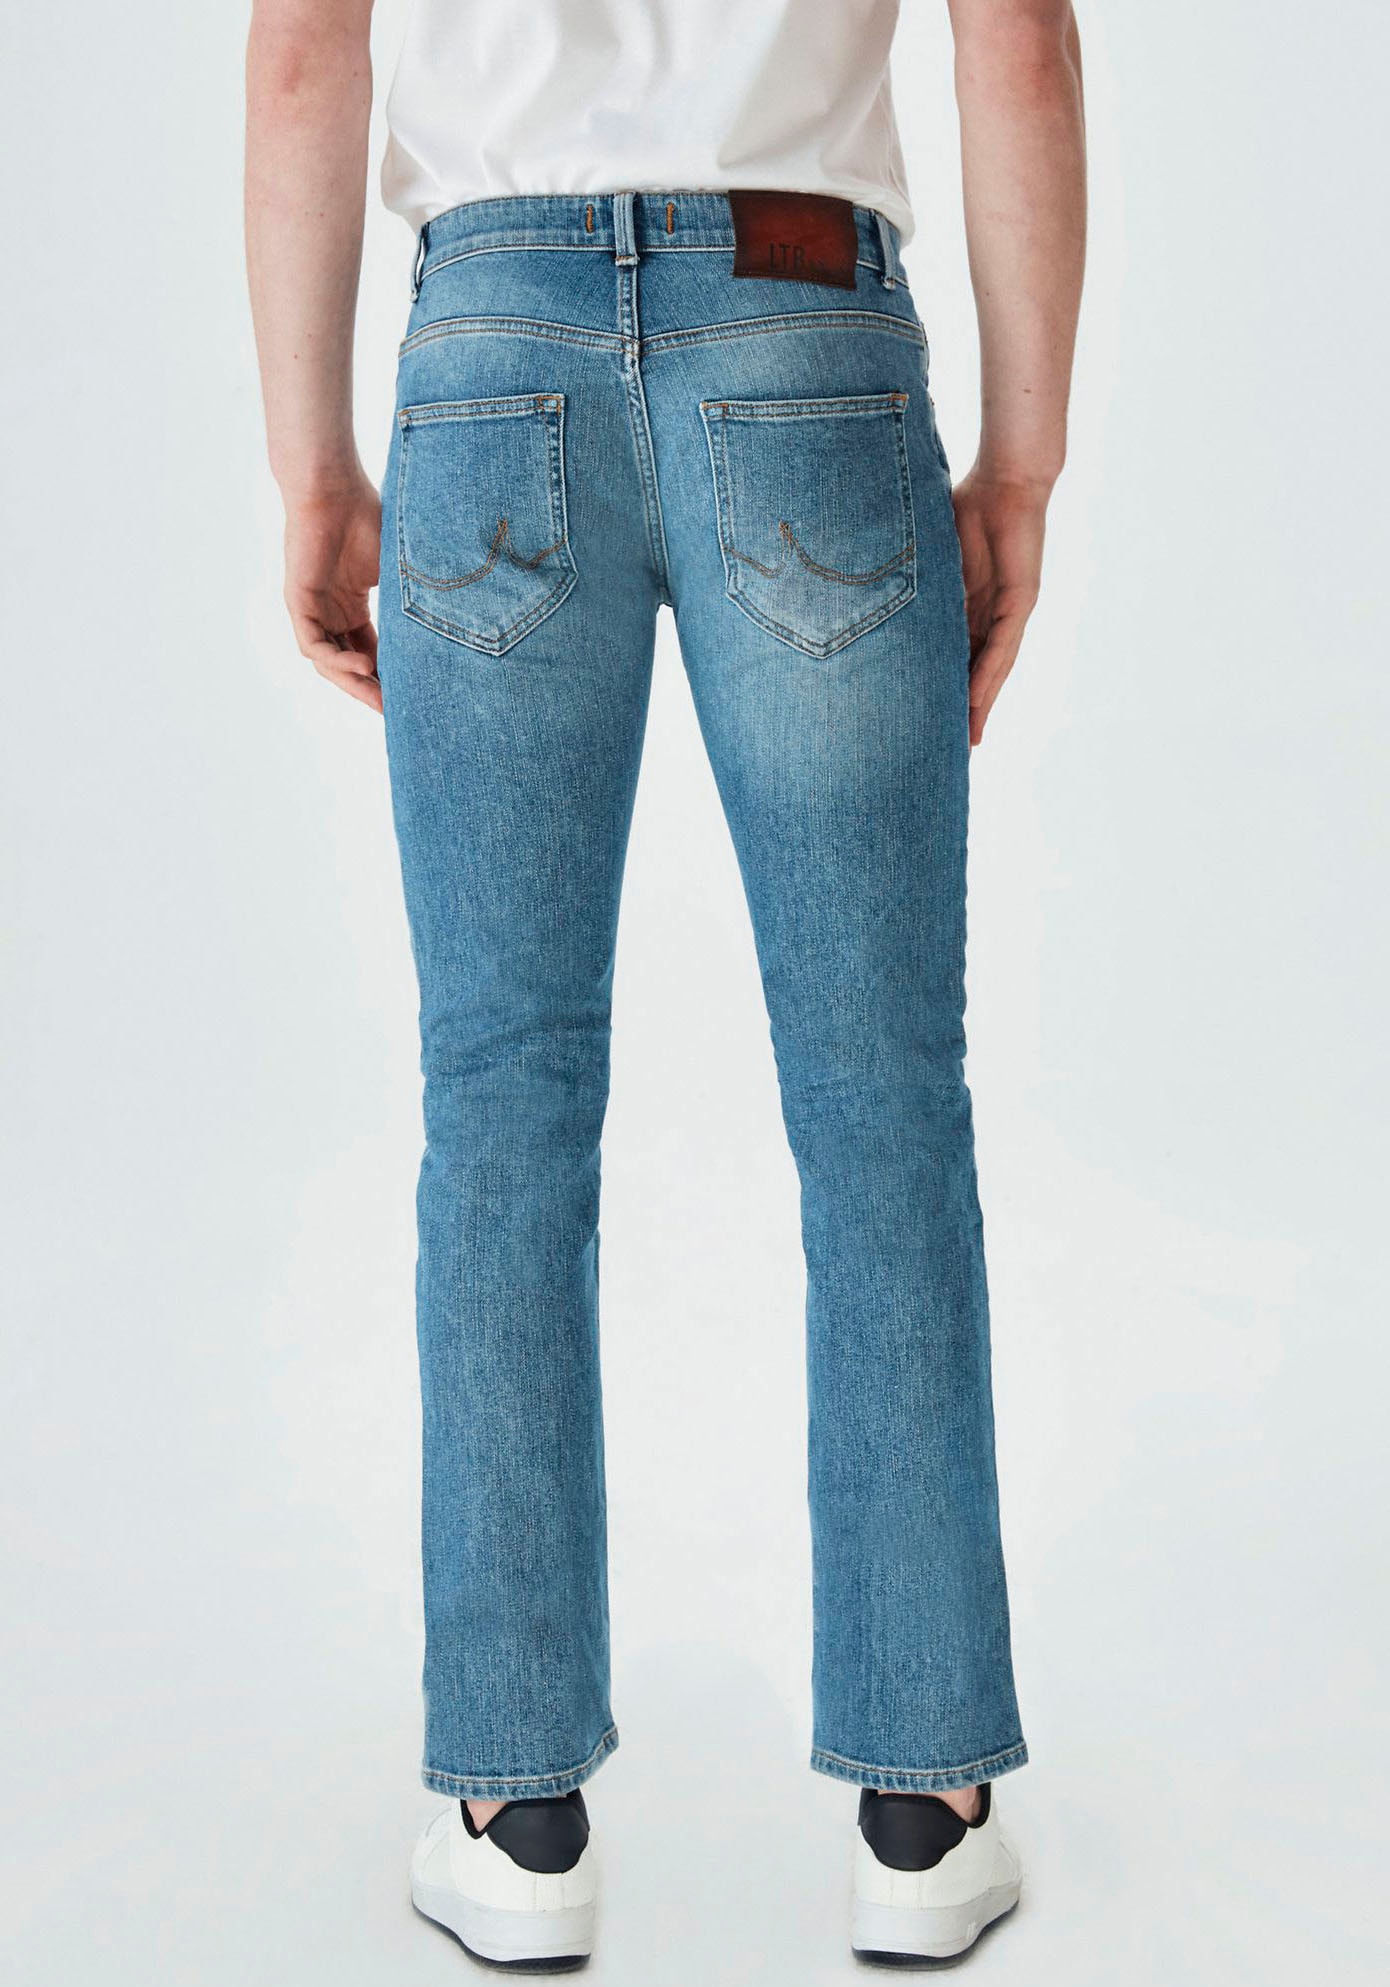 Ltb online bestellen Molly Jeans ▻